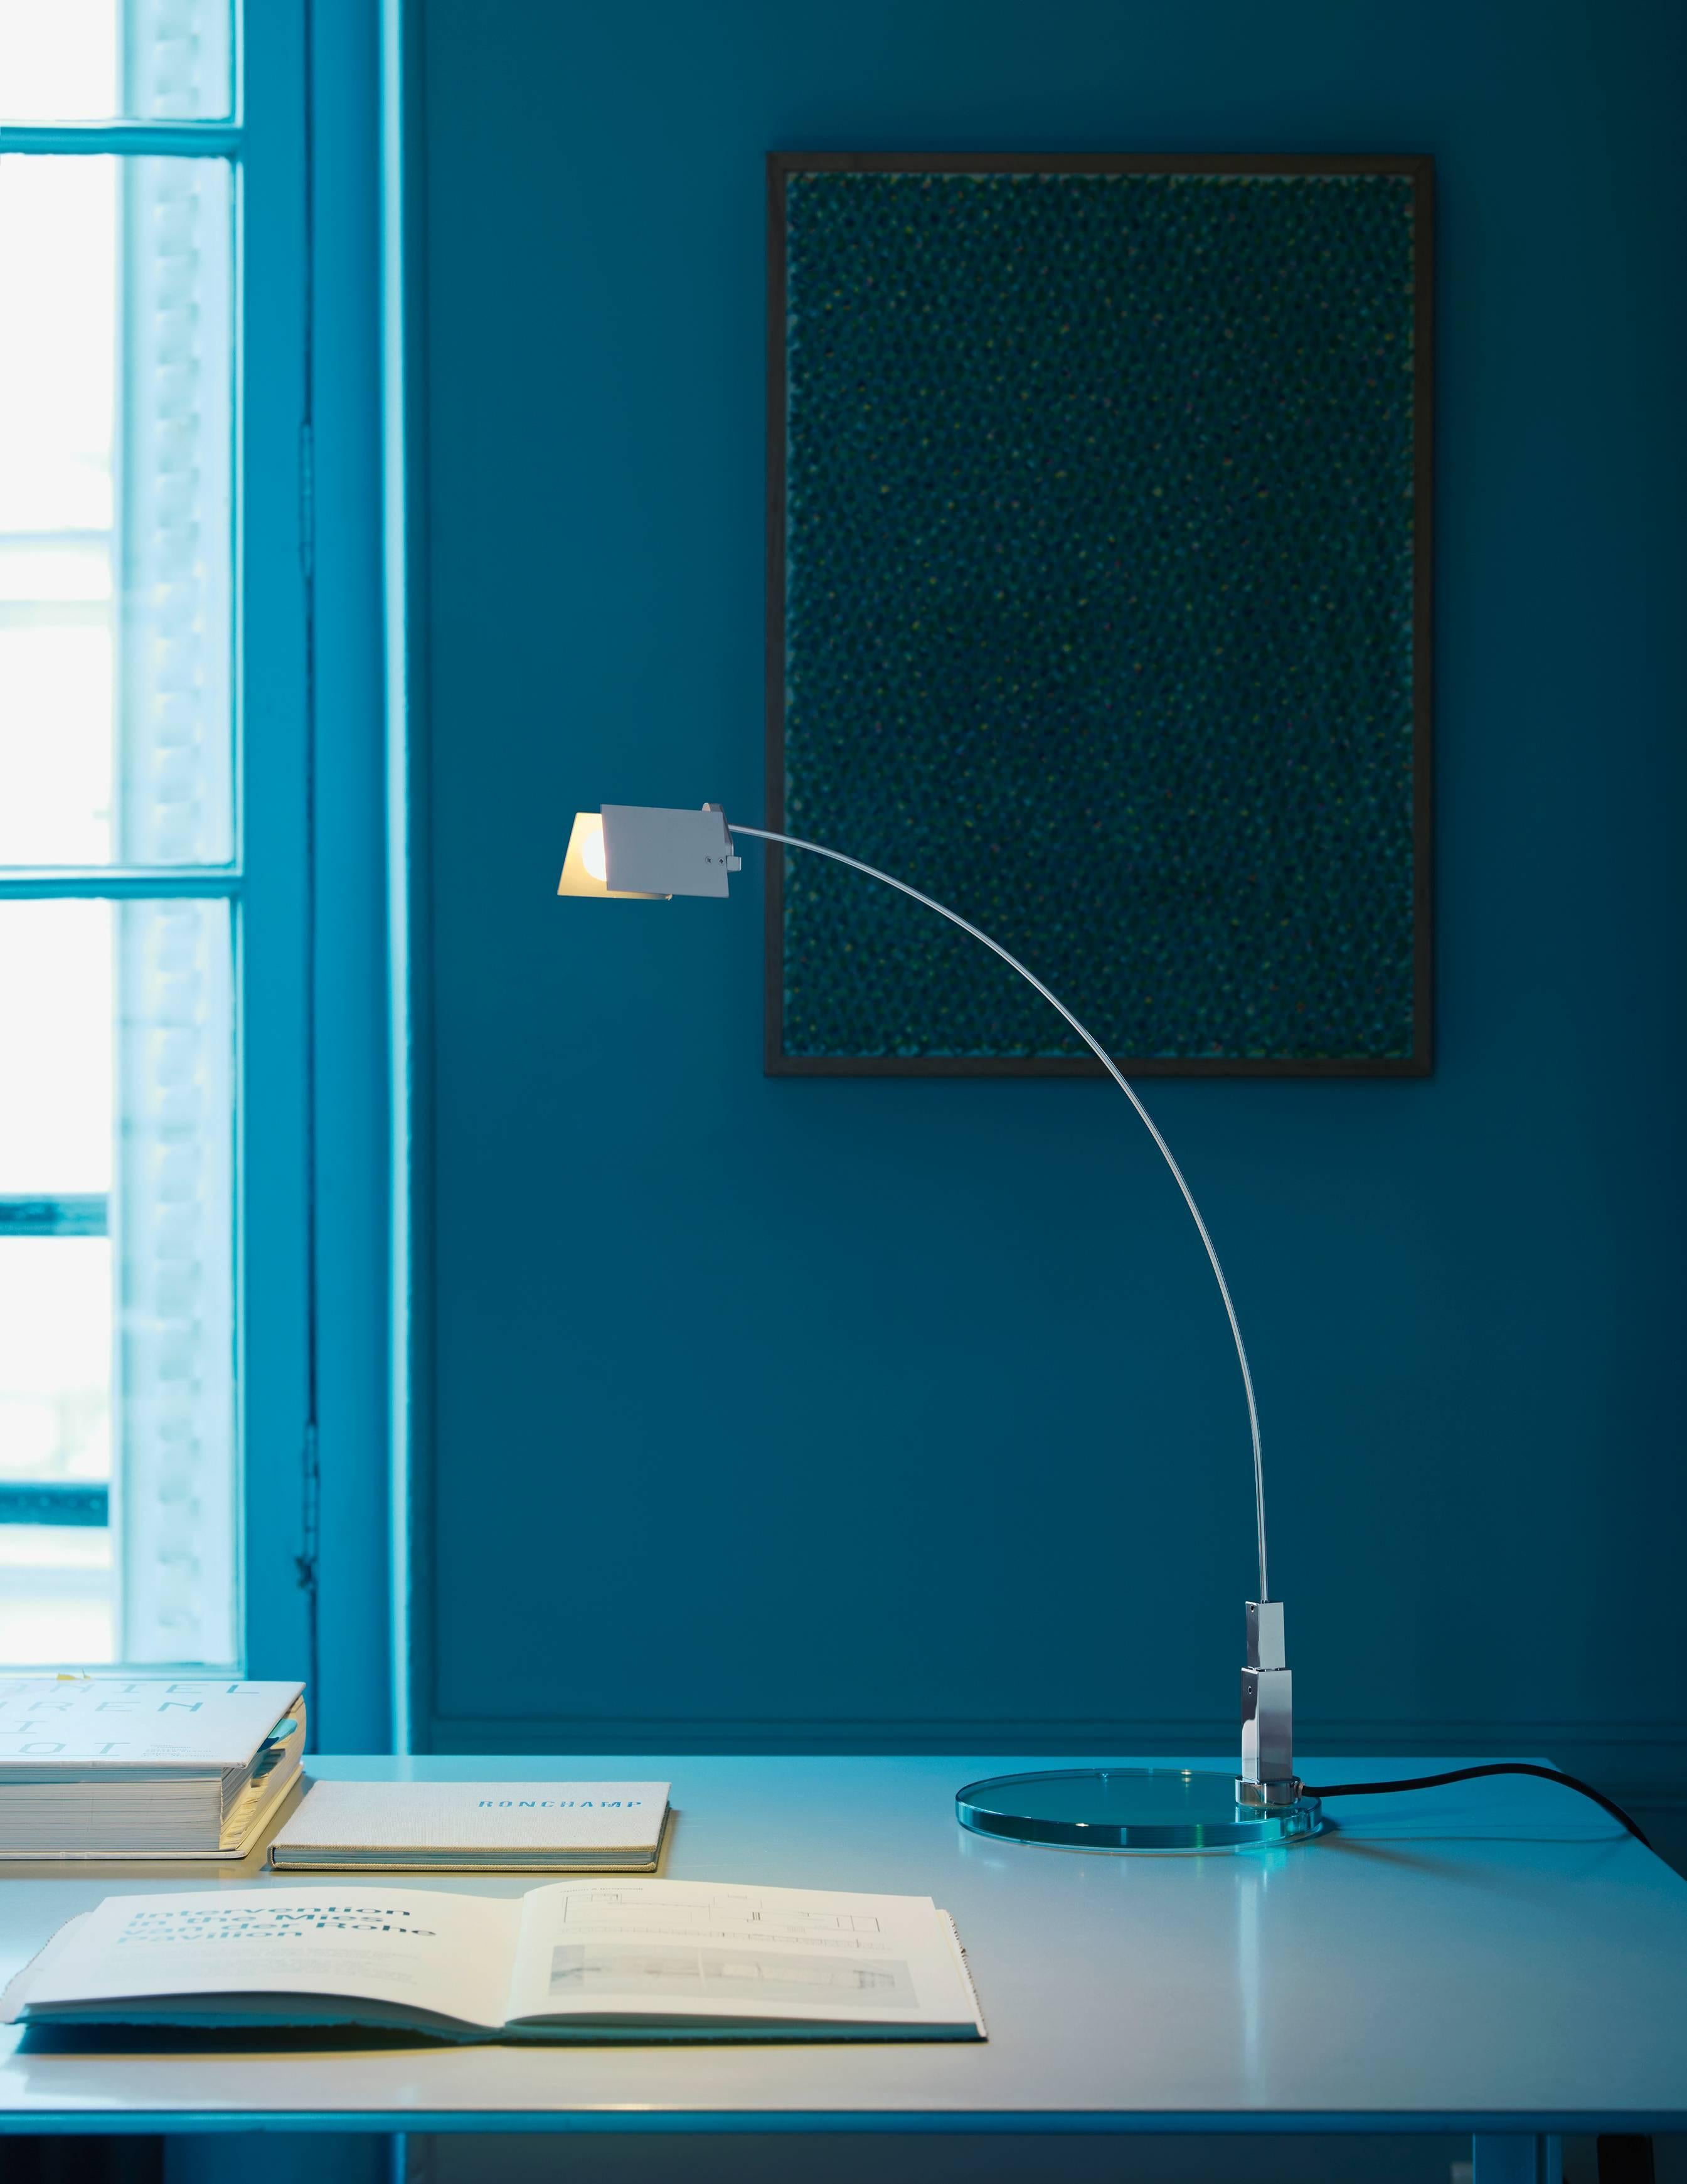 Conçue par Alvaro Siza et fabriquée par Fontana Arte, la lampe de table Falena est en métal chromé, conçue en 1994. C'est une représentation de la légèreté et de l'élégance pour cette famille de lampes conçue par Alvaro Siza et disponible en version